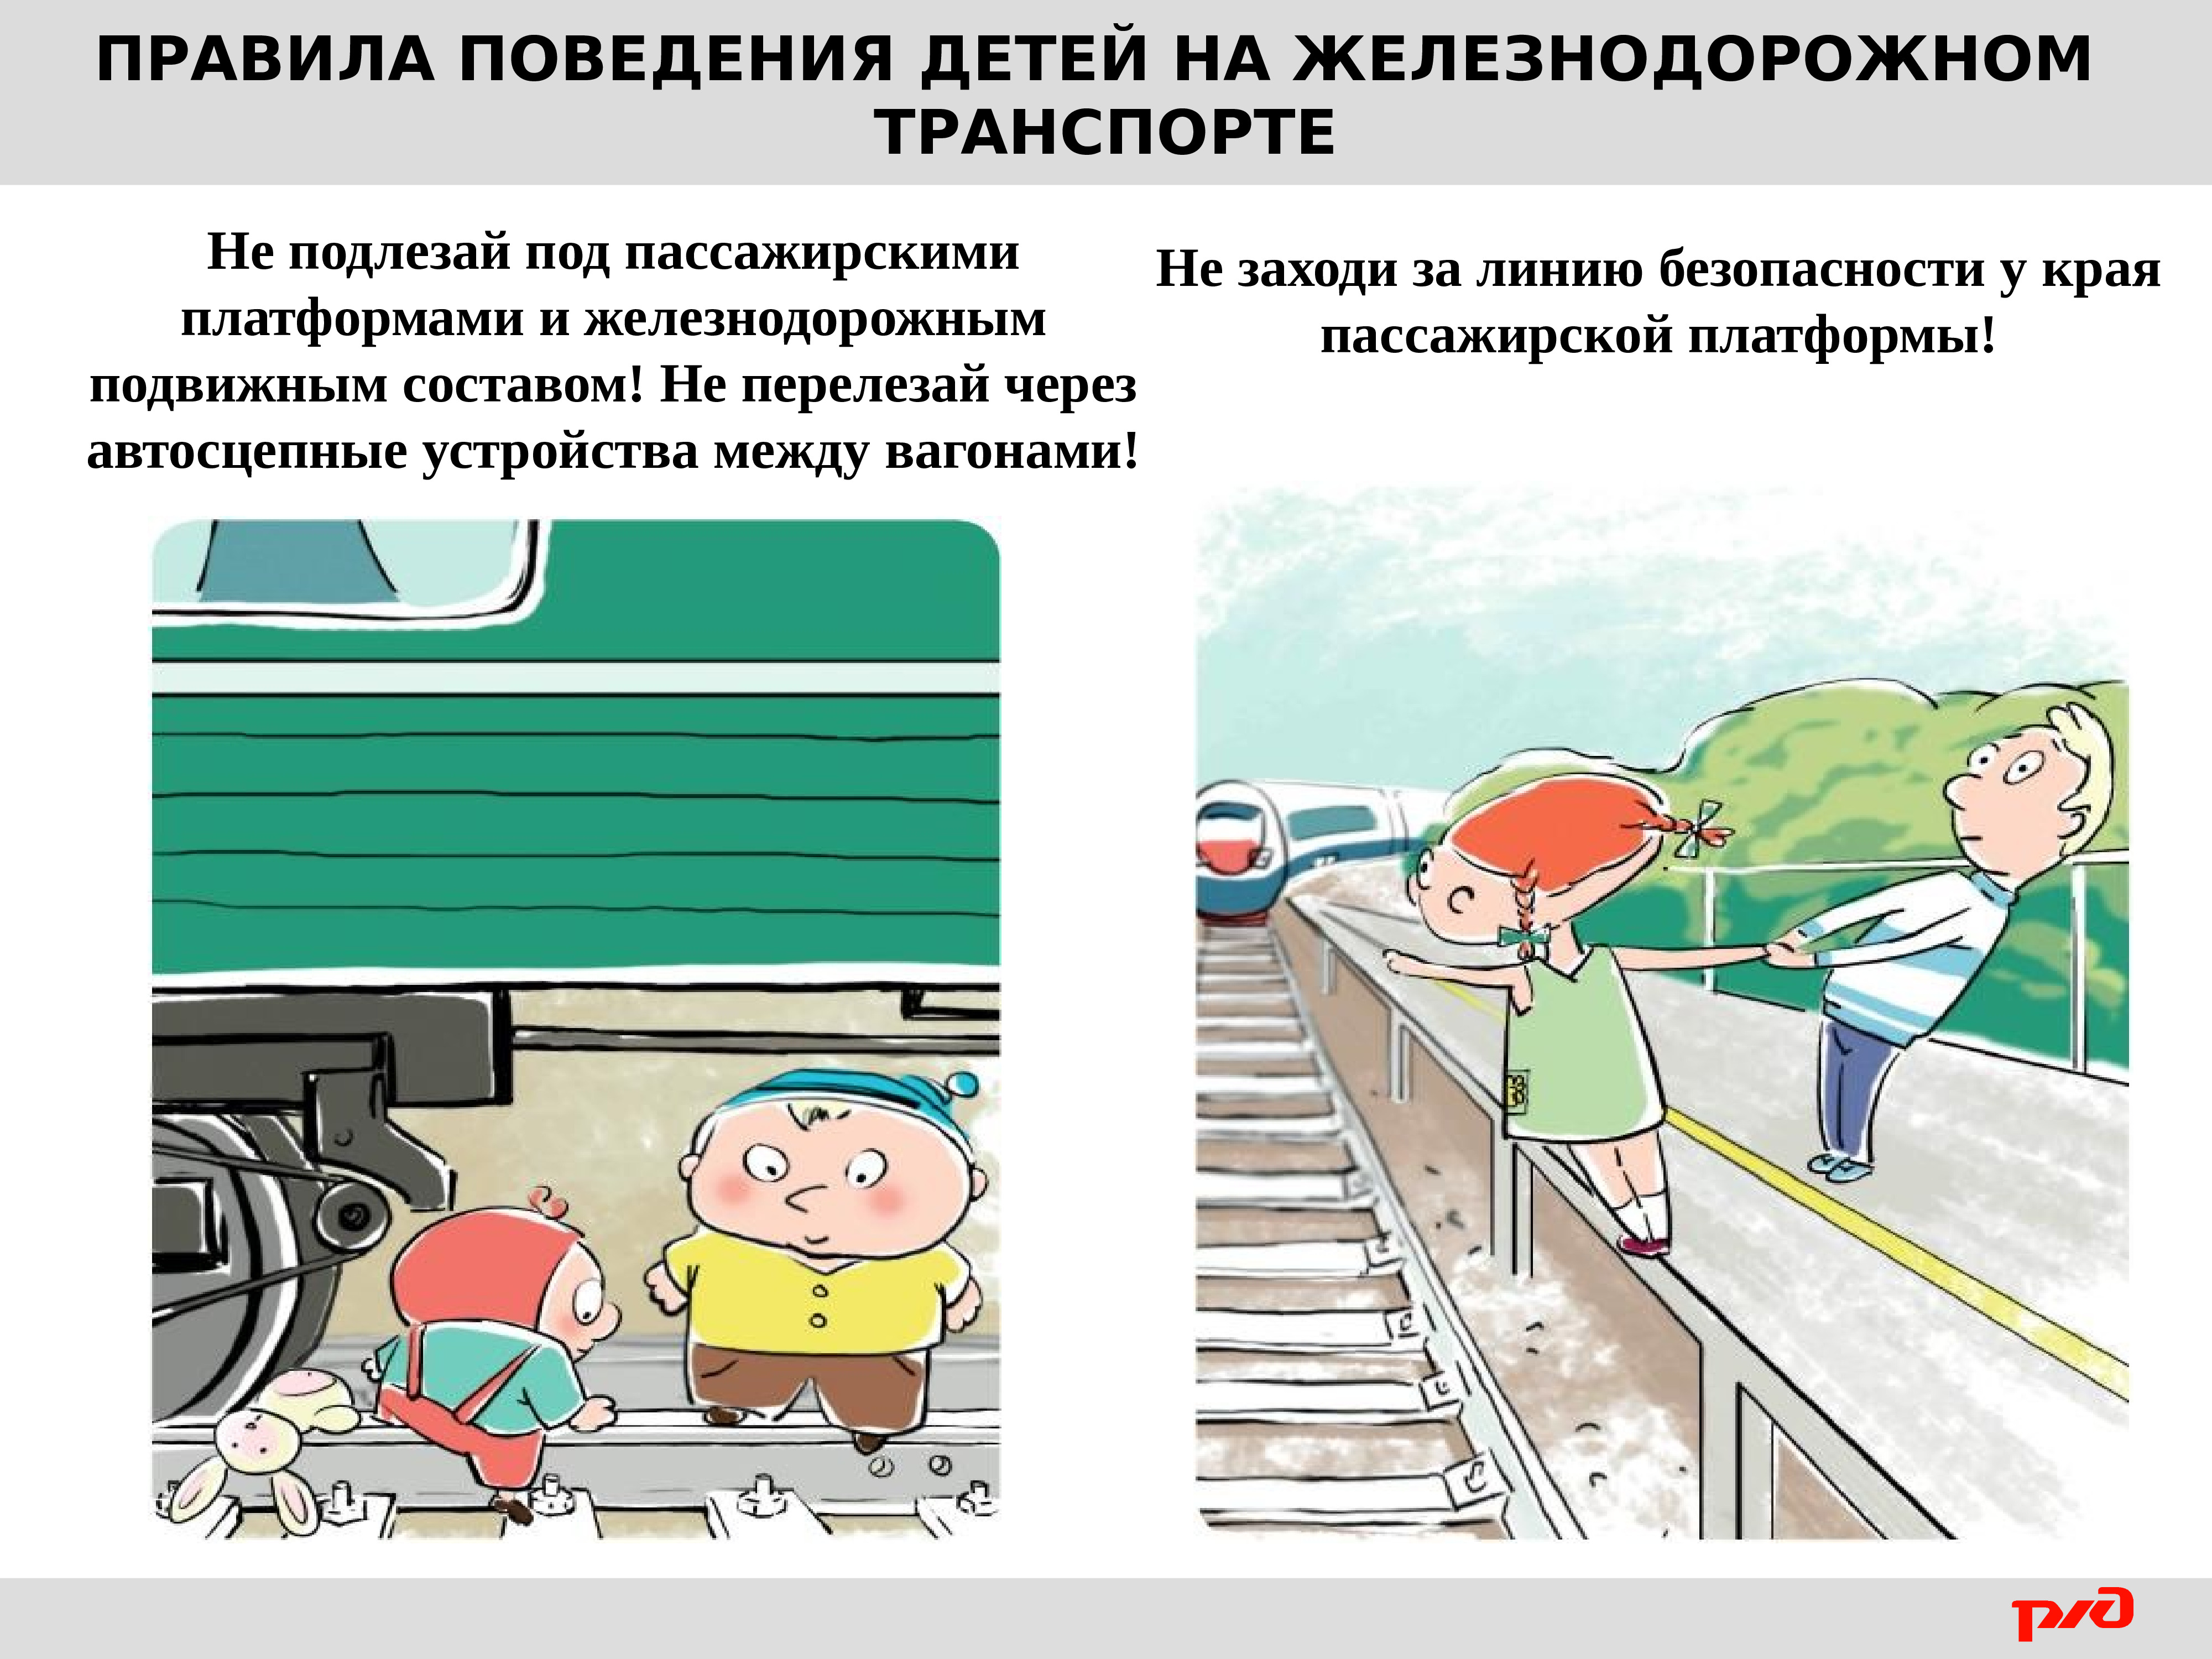 Правила безопасности на жд. Правила безопасности на Железнодорожном транспорте для детей. Безопасное поведение детей на Железнодорожном транспорте. Правилах безопасного поведения на Железнодорожном транспорте. Безопвсность нажелезнгй допоге.